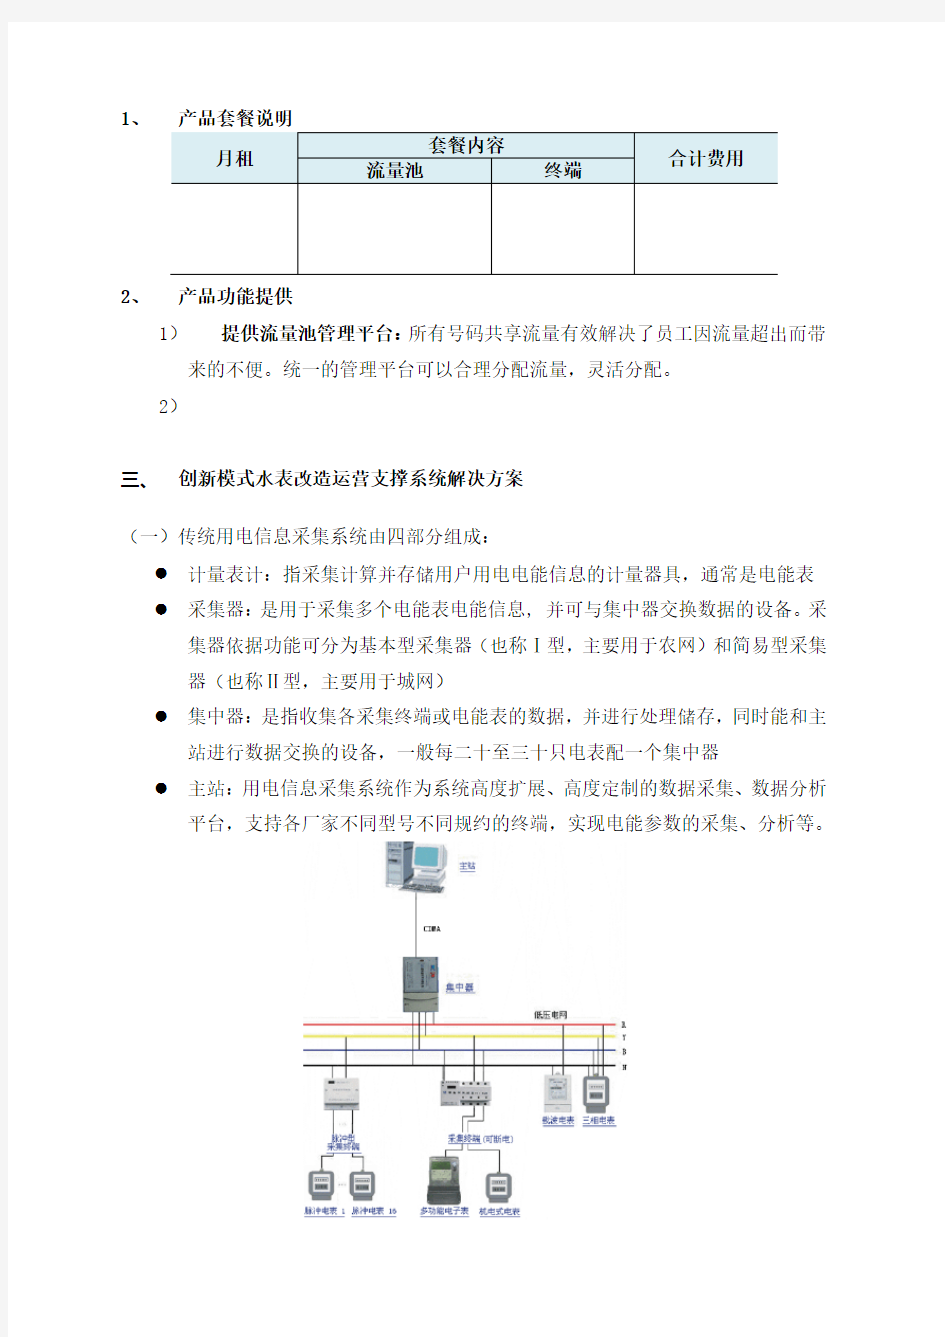 水厂中国电信物联网智能水表改造解决方案